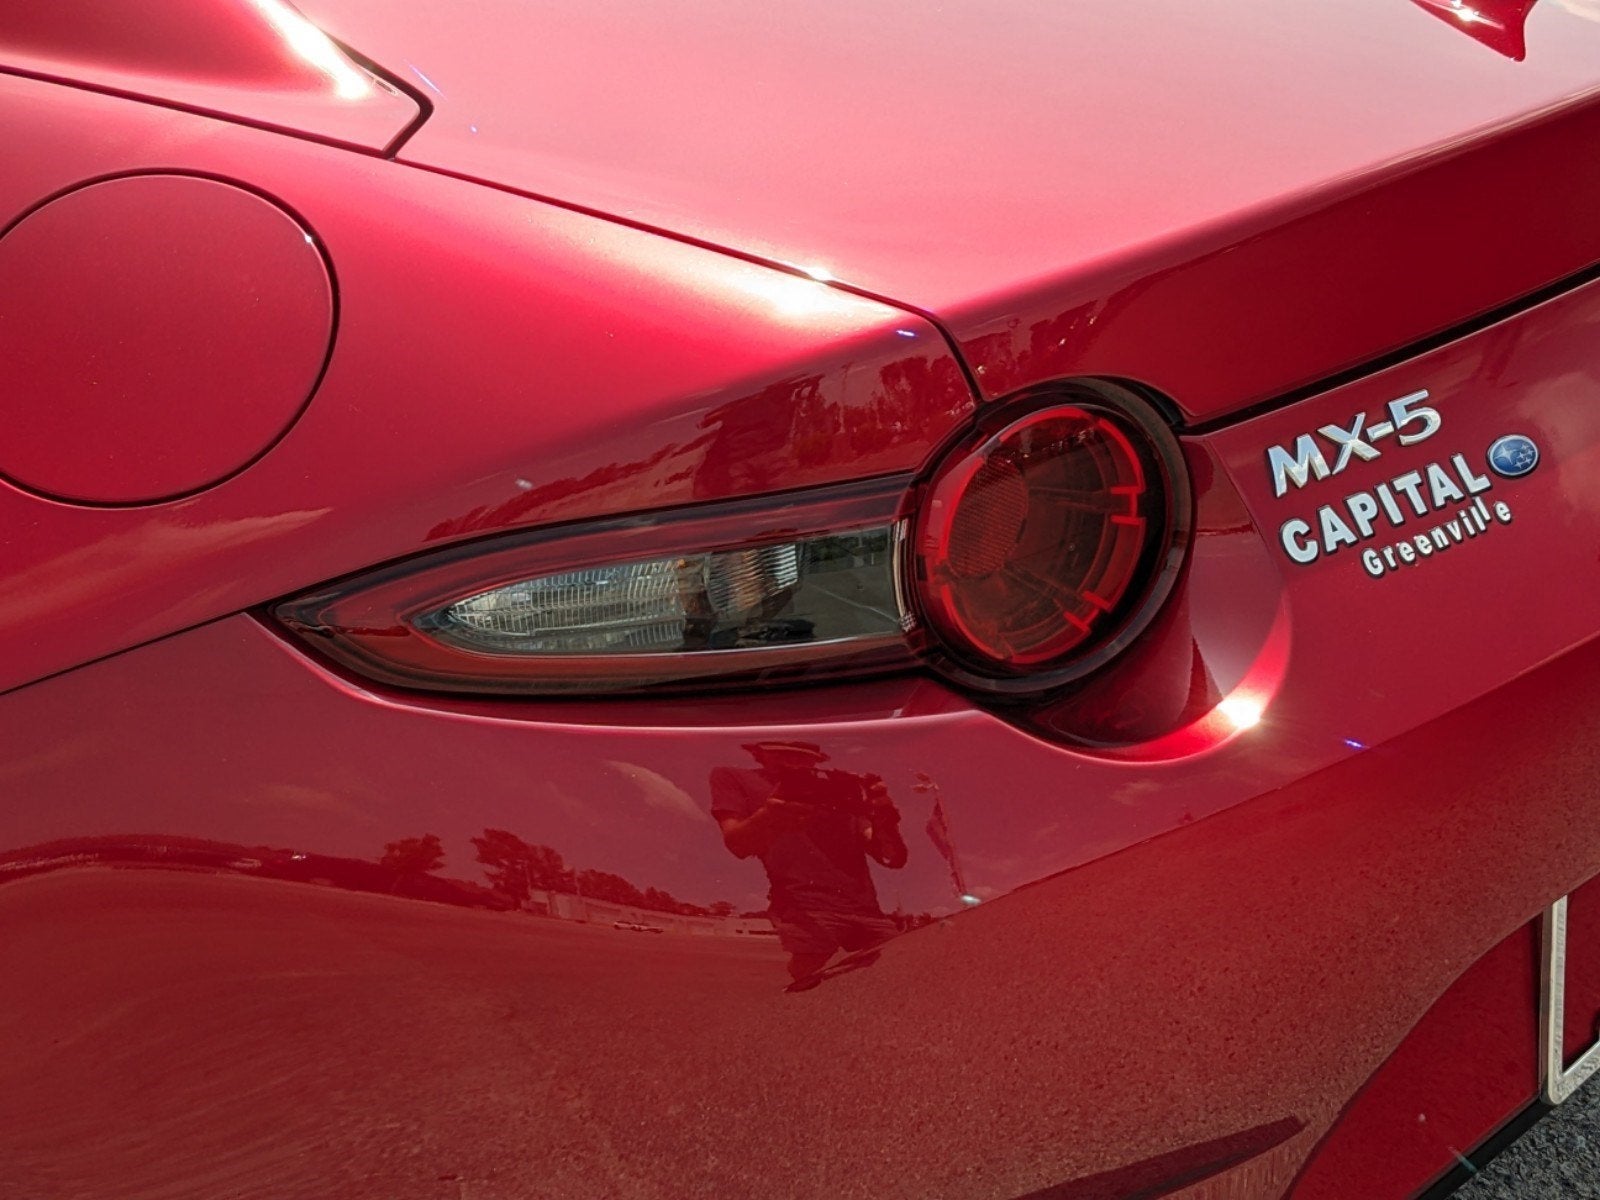 2020 Mazda Mazda MX-5 Miata RF Grand Touring